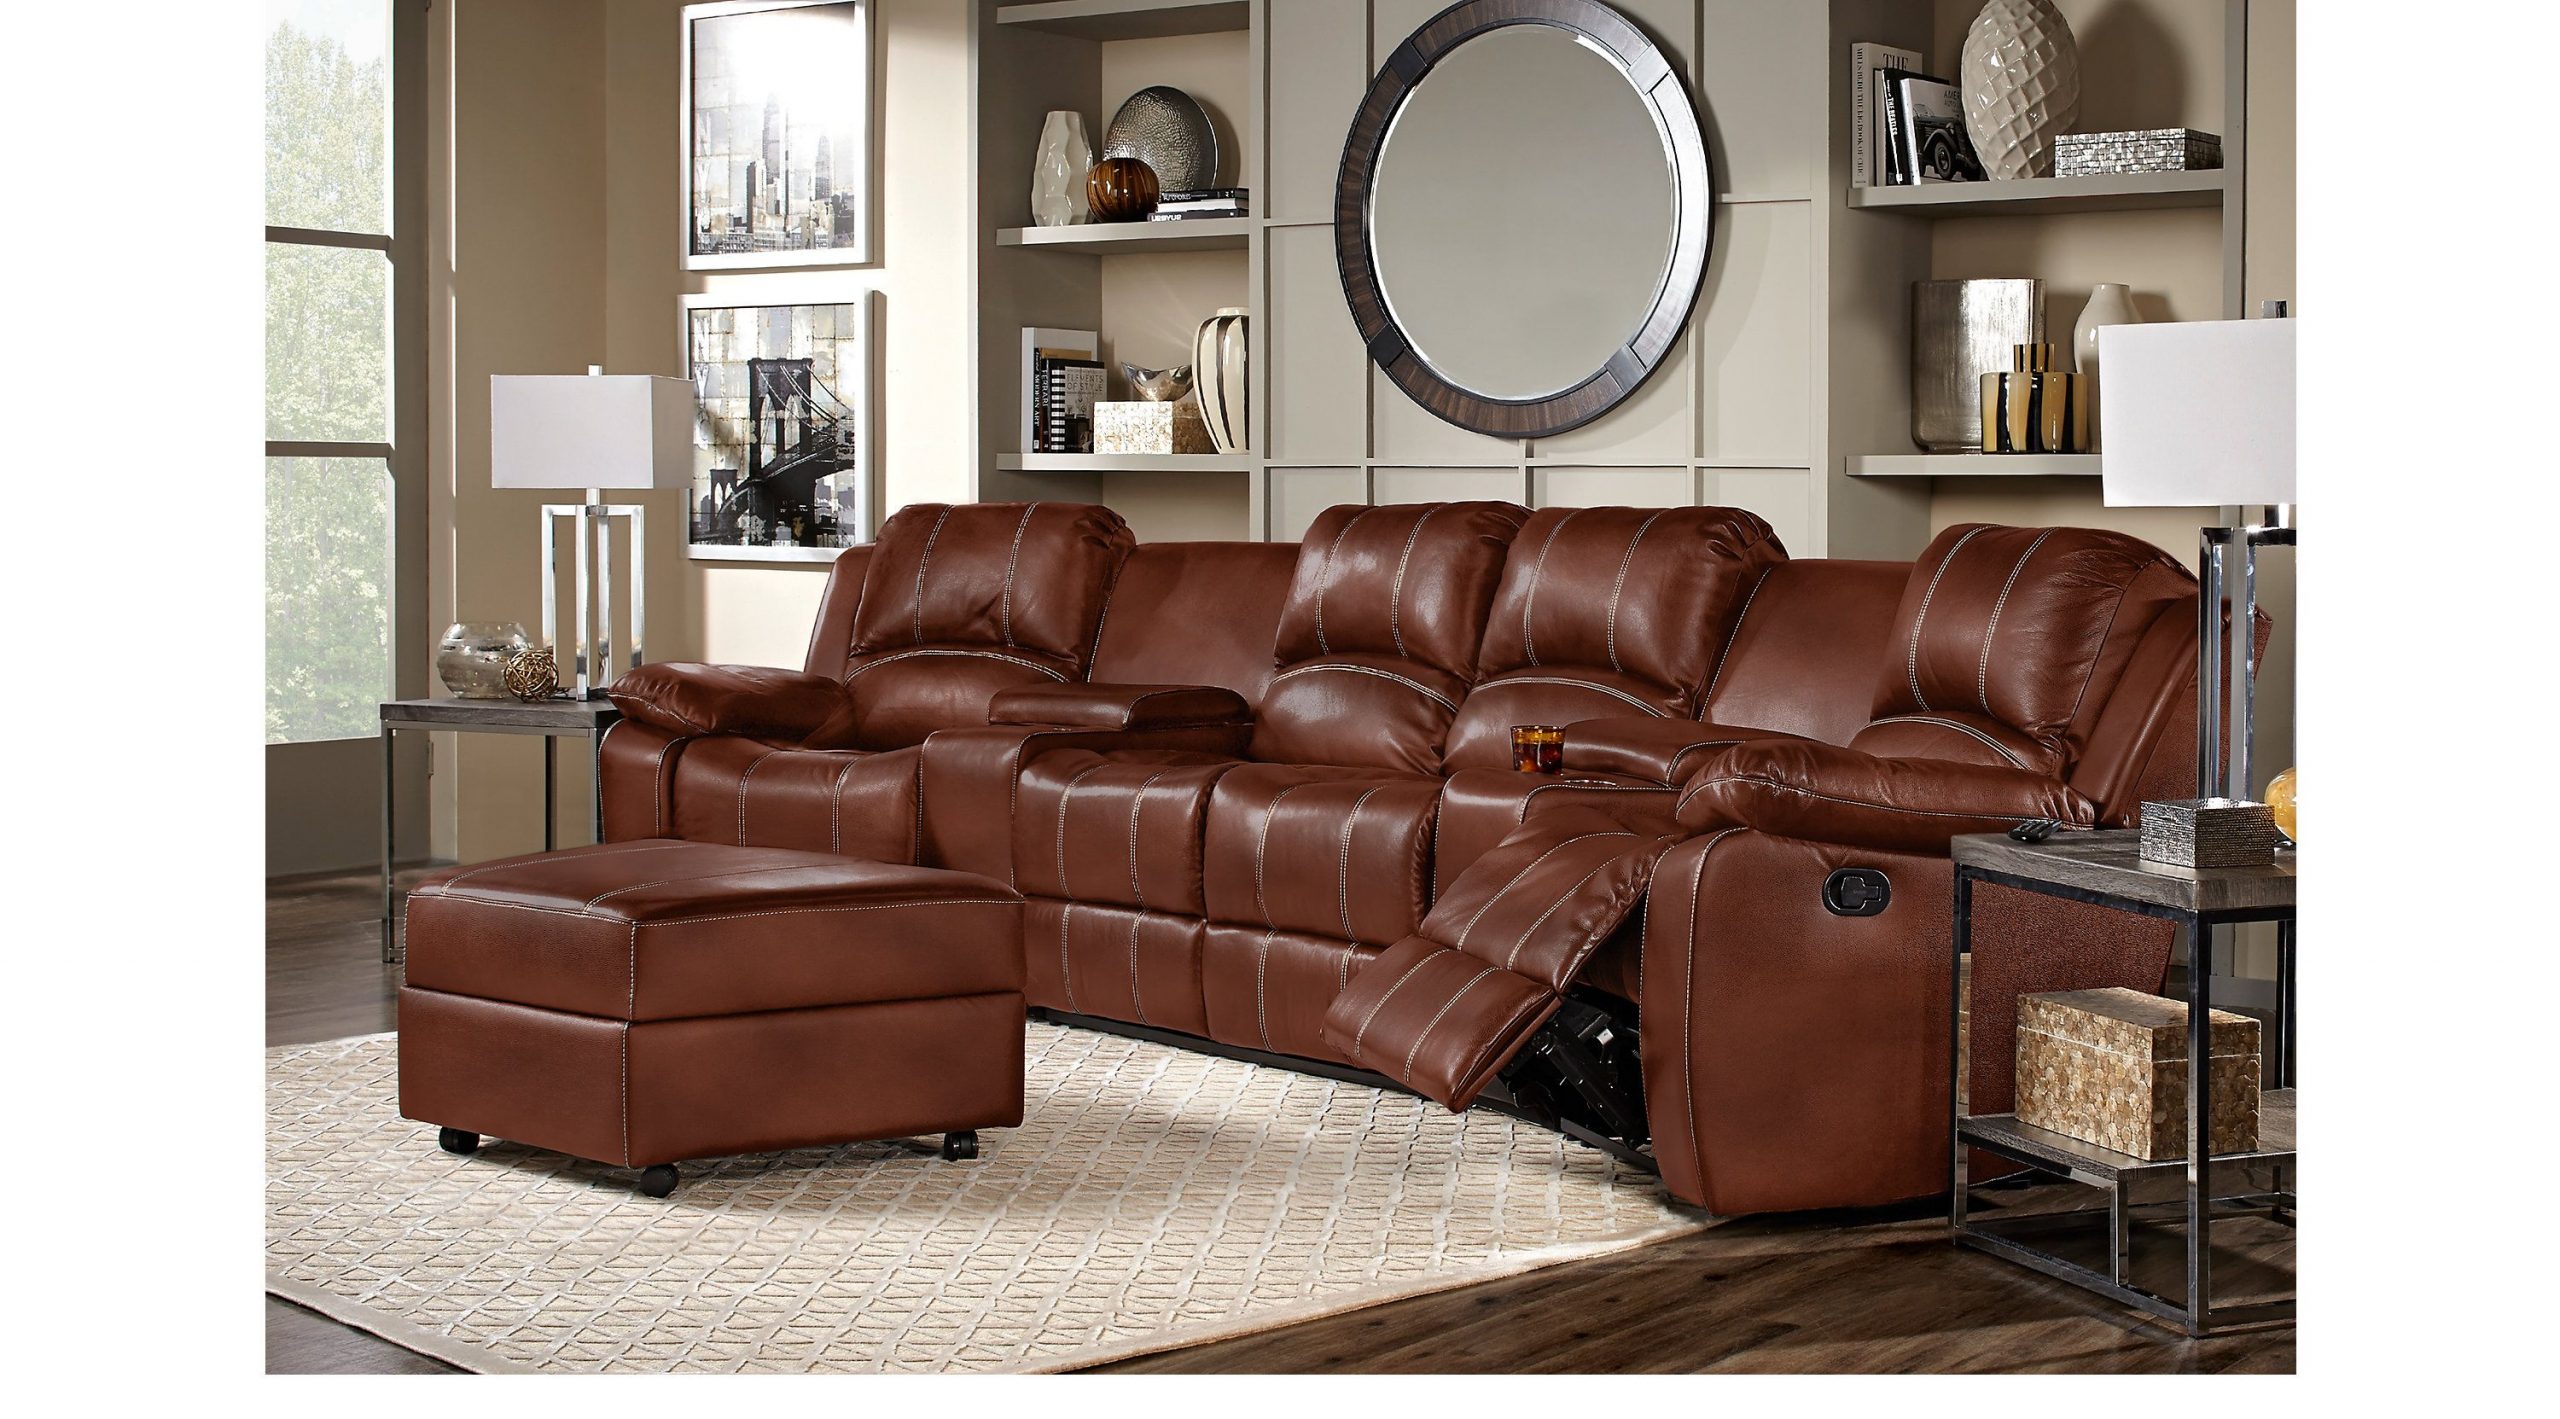 Leather Living Room Set Online Sale